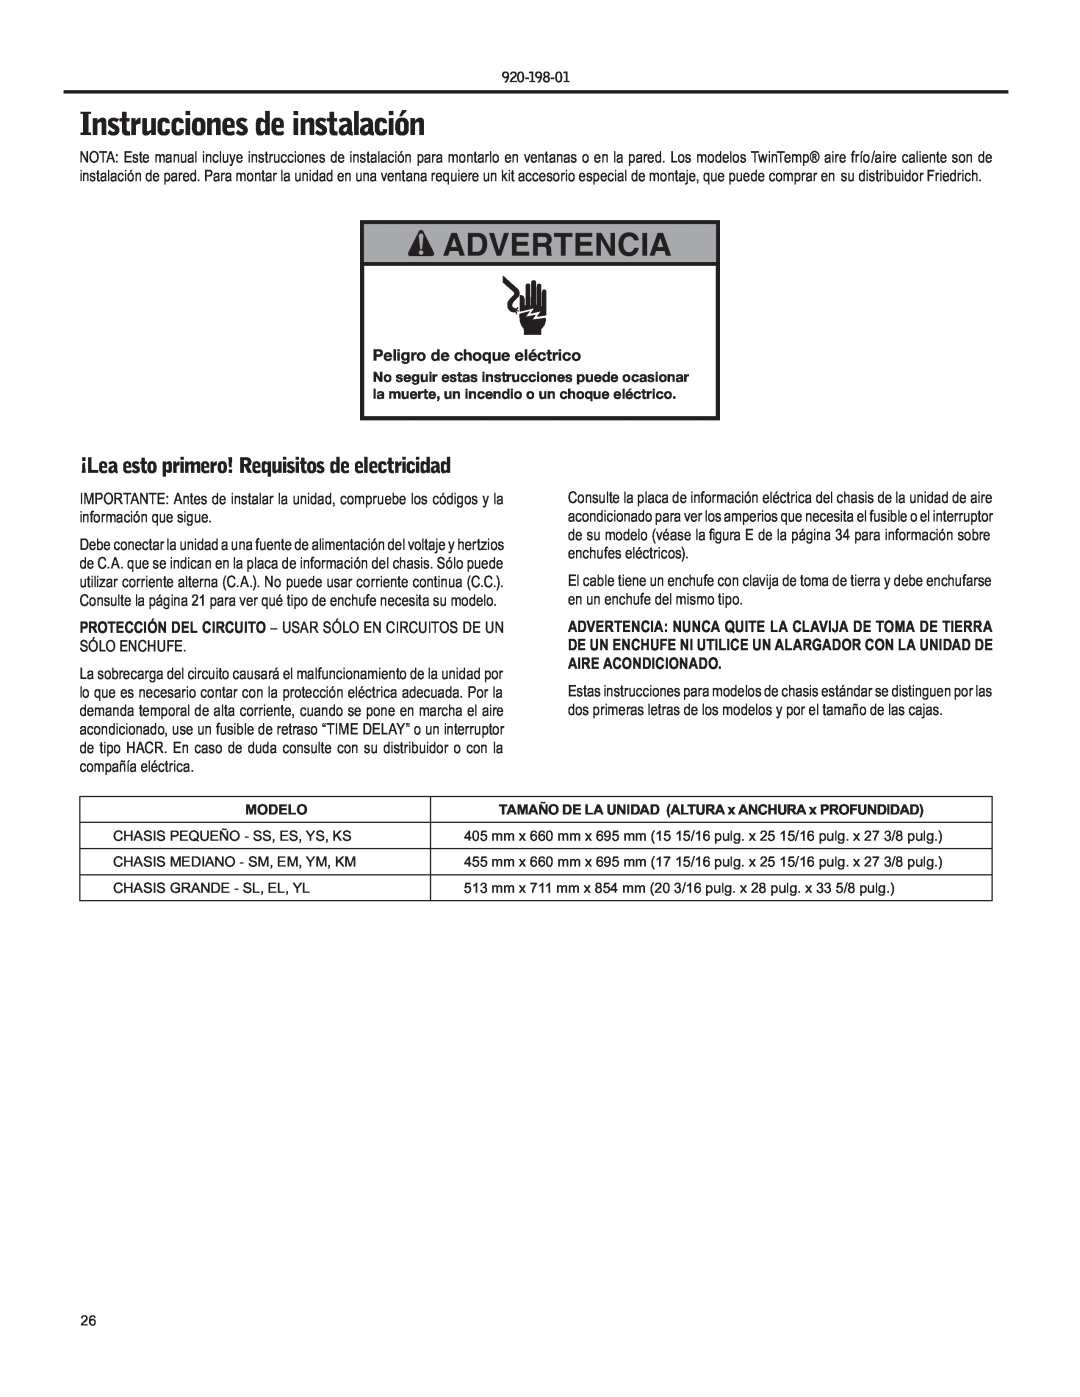 Friedrich YS09 operation manual Instrucciones de instalación, Advertencia, ¡Lea esto primero! Requisitos de electricidad 